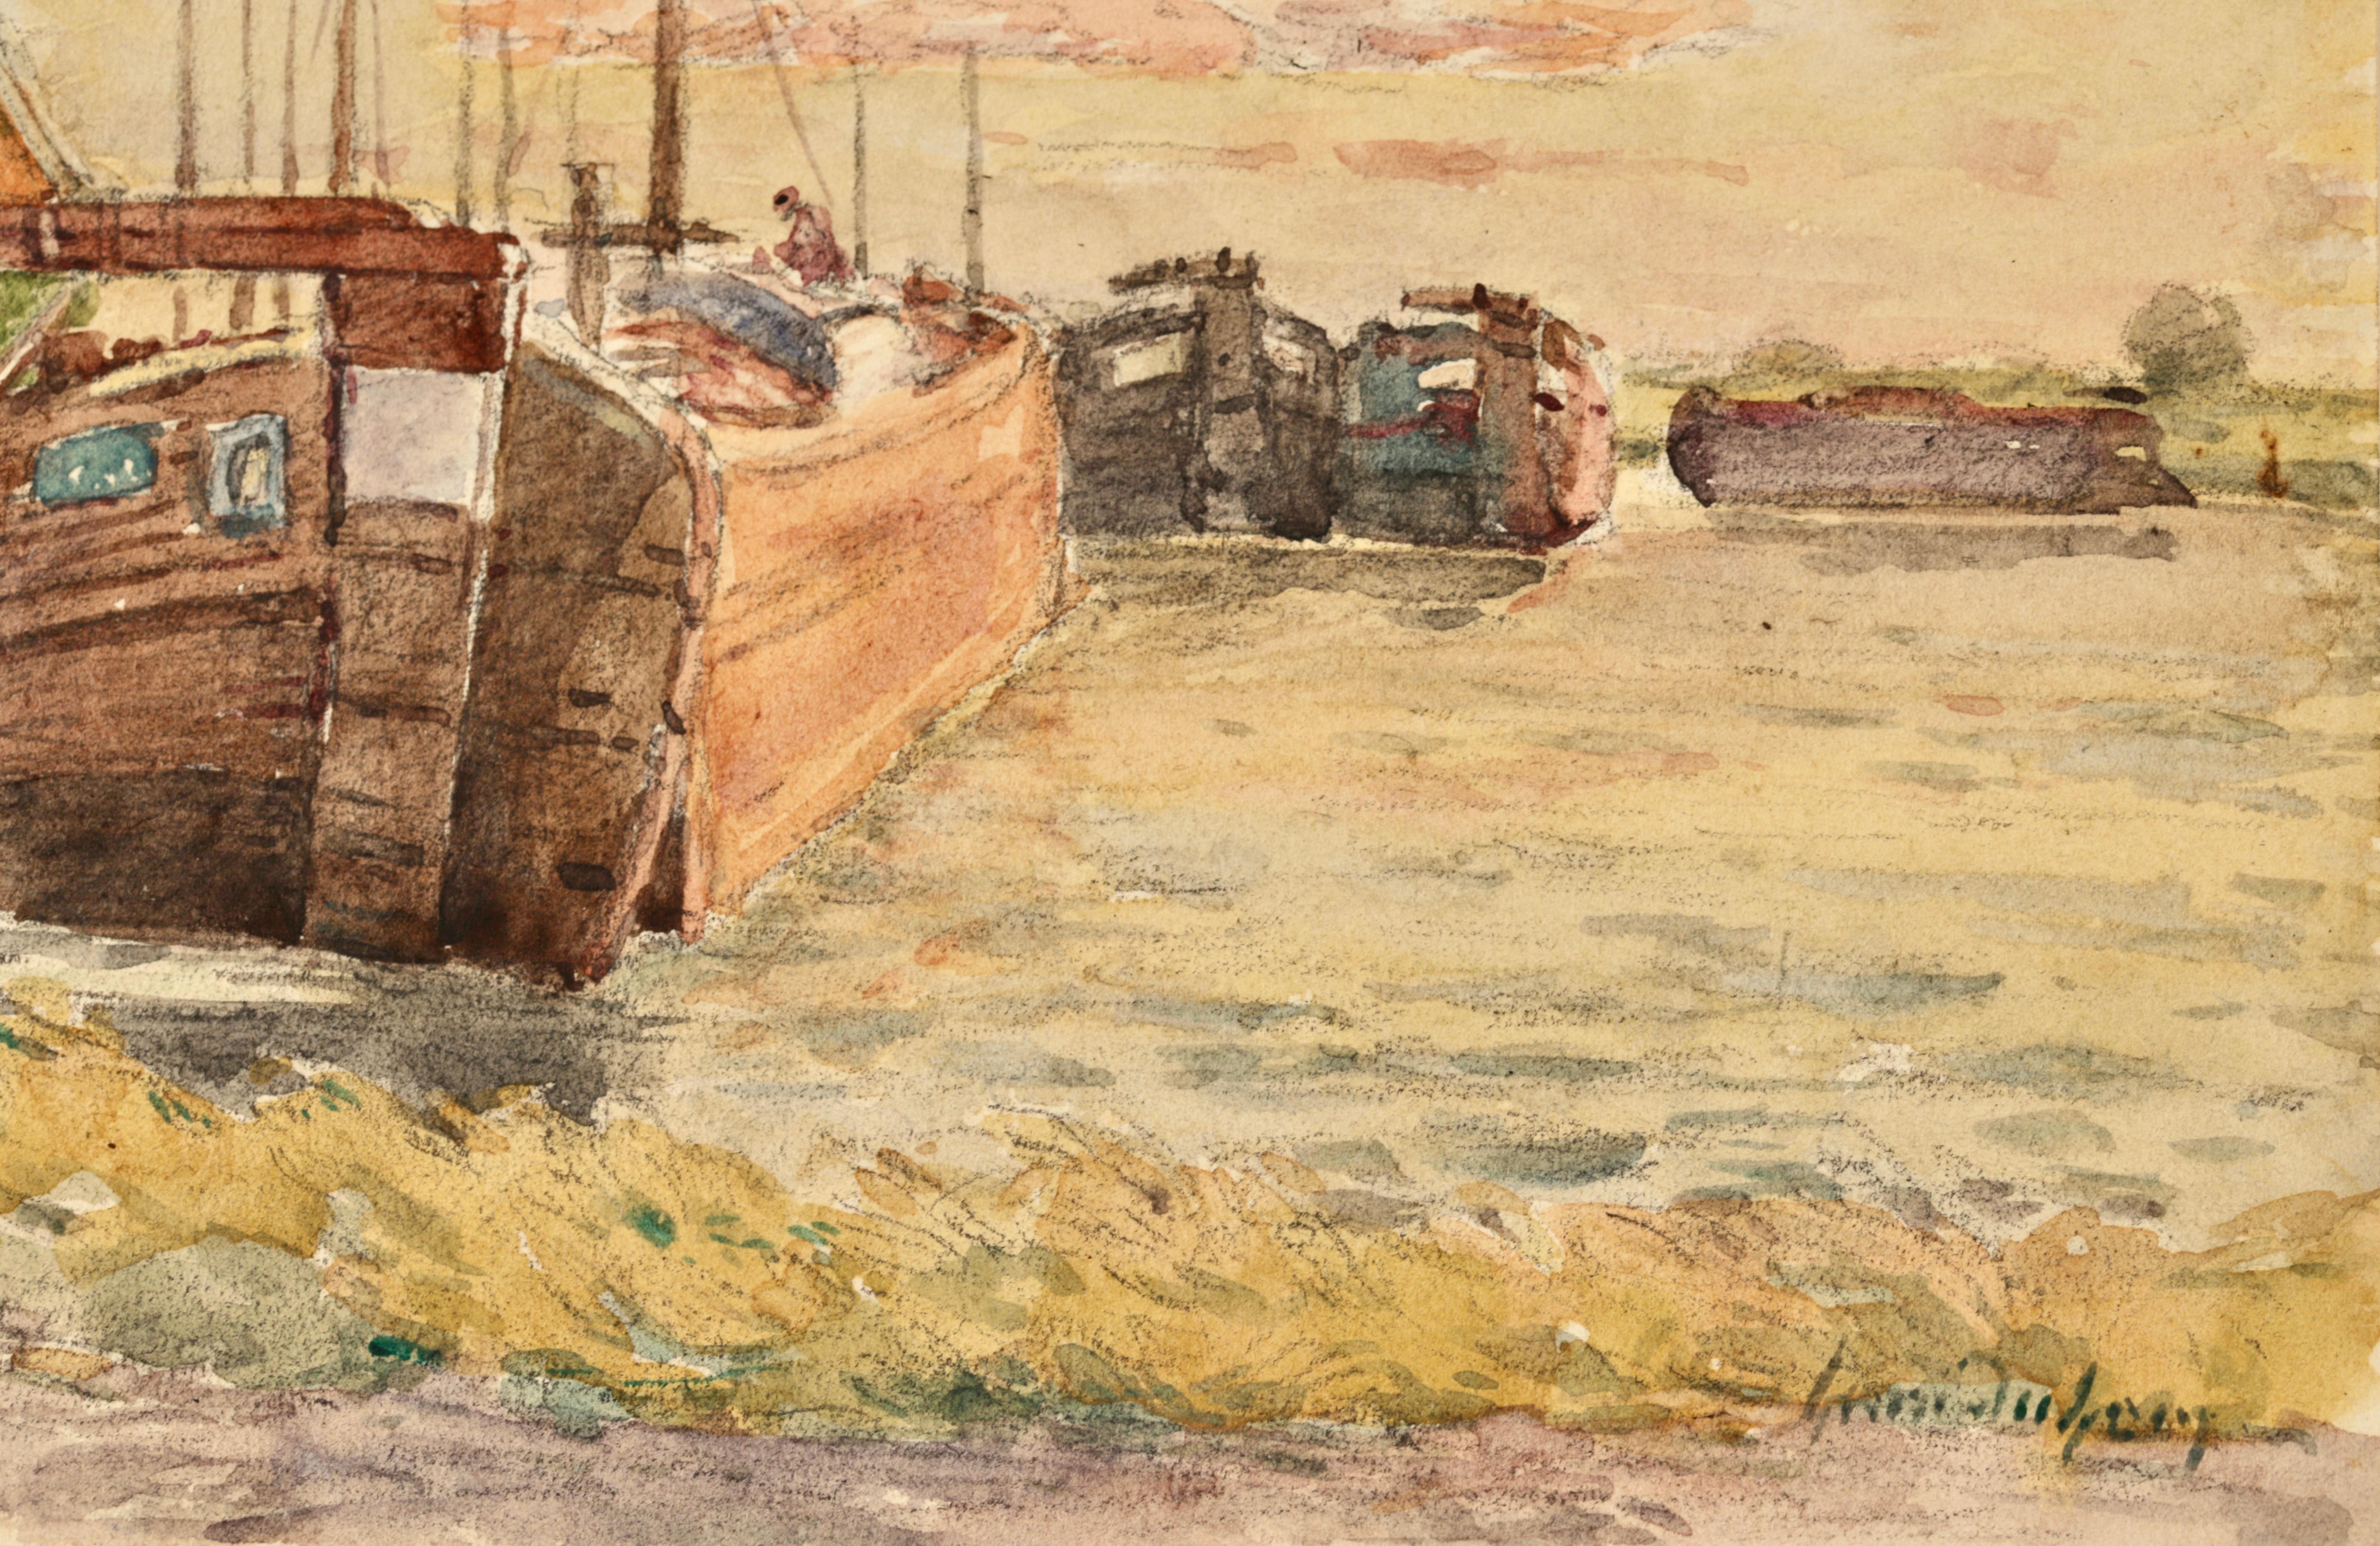 Signierte impressionistische Figuren in Flusslandschaft Aquarell auf Papier um 1920 von Henri Duhem. Das Werk zeigt eine Mutter und ihre Tochter, die an einem sonnigen Tag händchenhaltend einen Weg neben einem grünen Bootshaus entlanggehen. Ein Mann